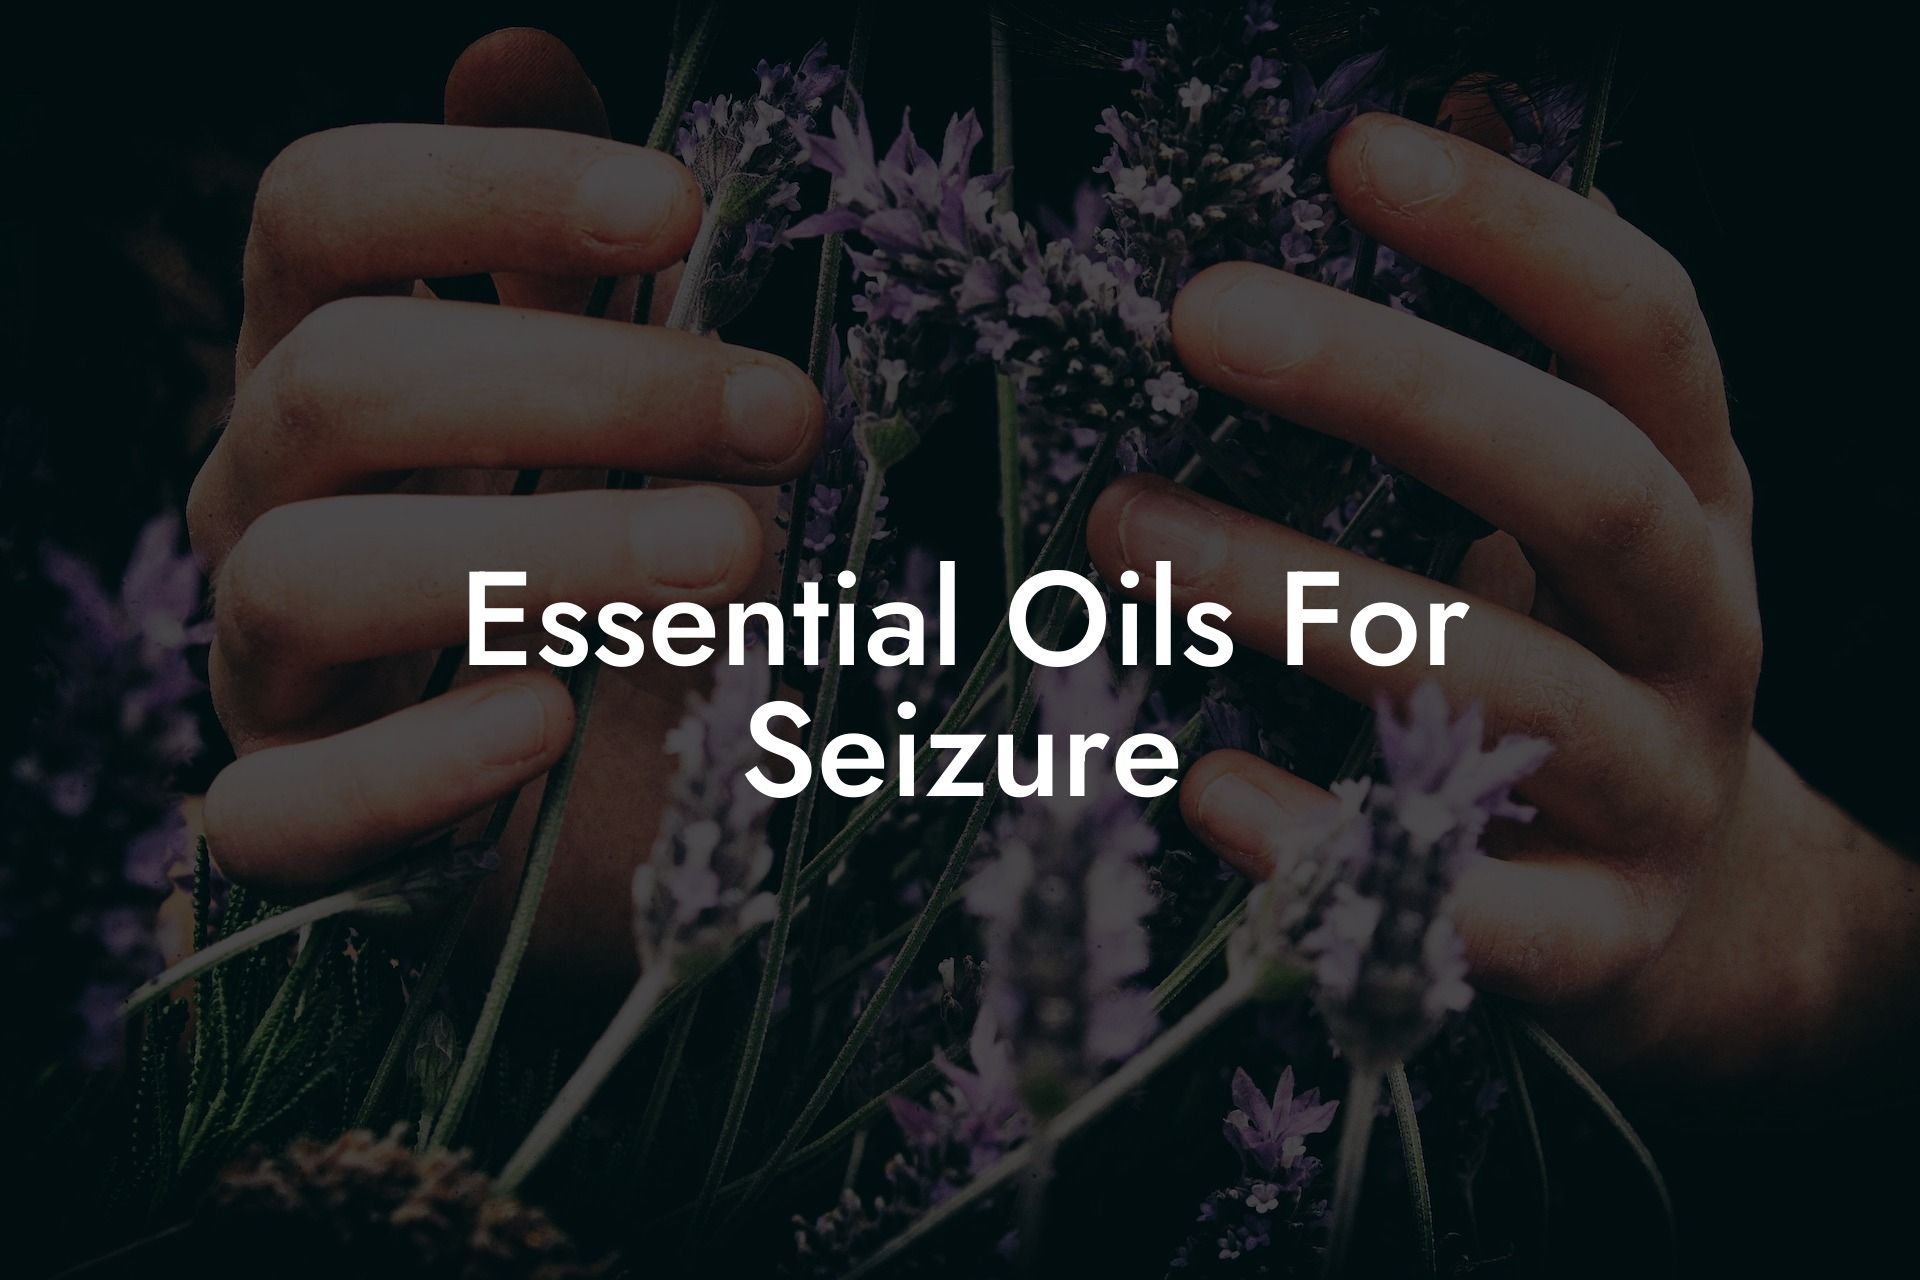 Essential Oils For Seizure